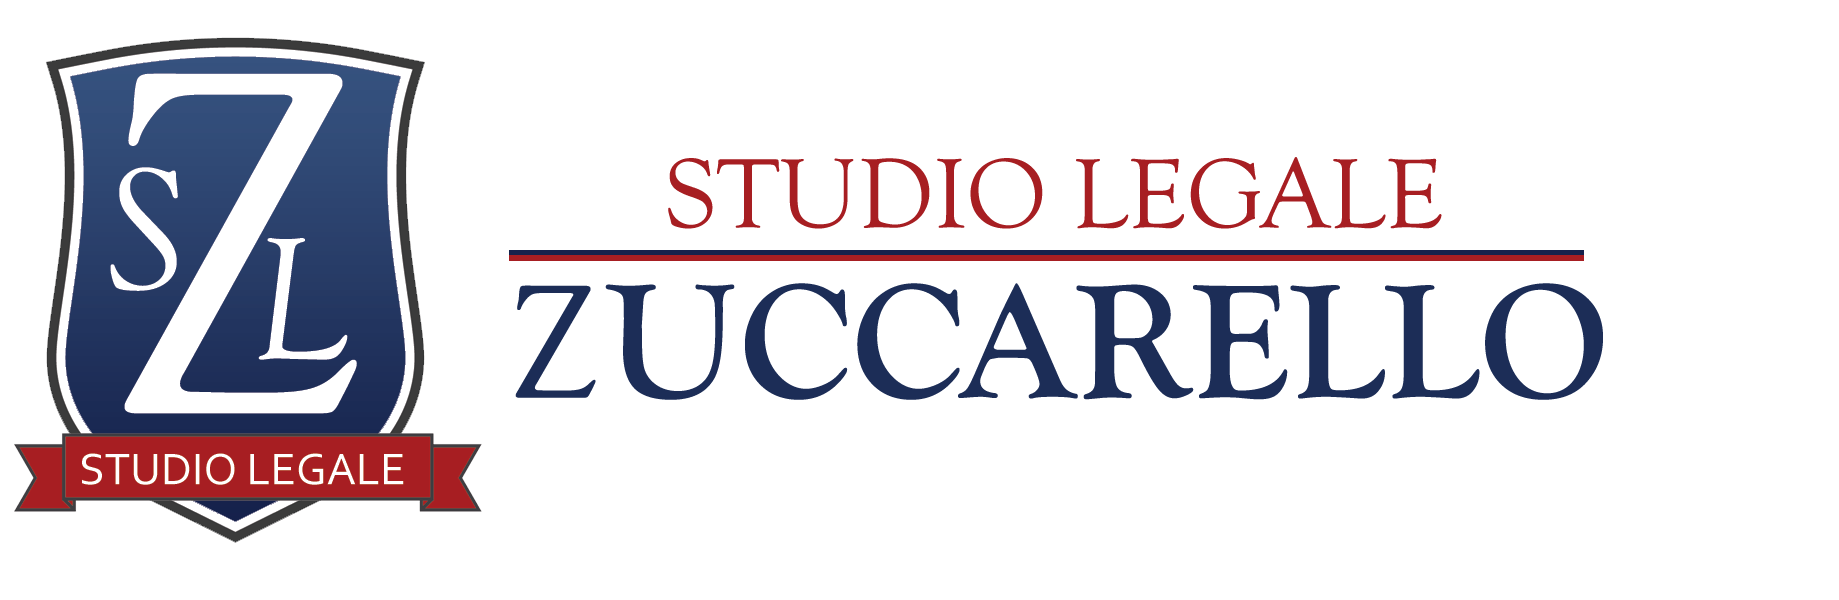 STUDIO LEGALE ZUCCARELLO - Logo